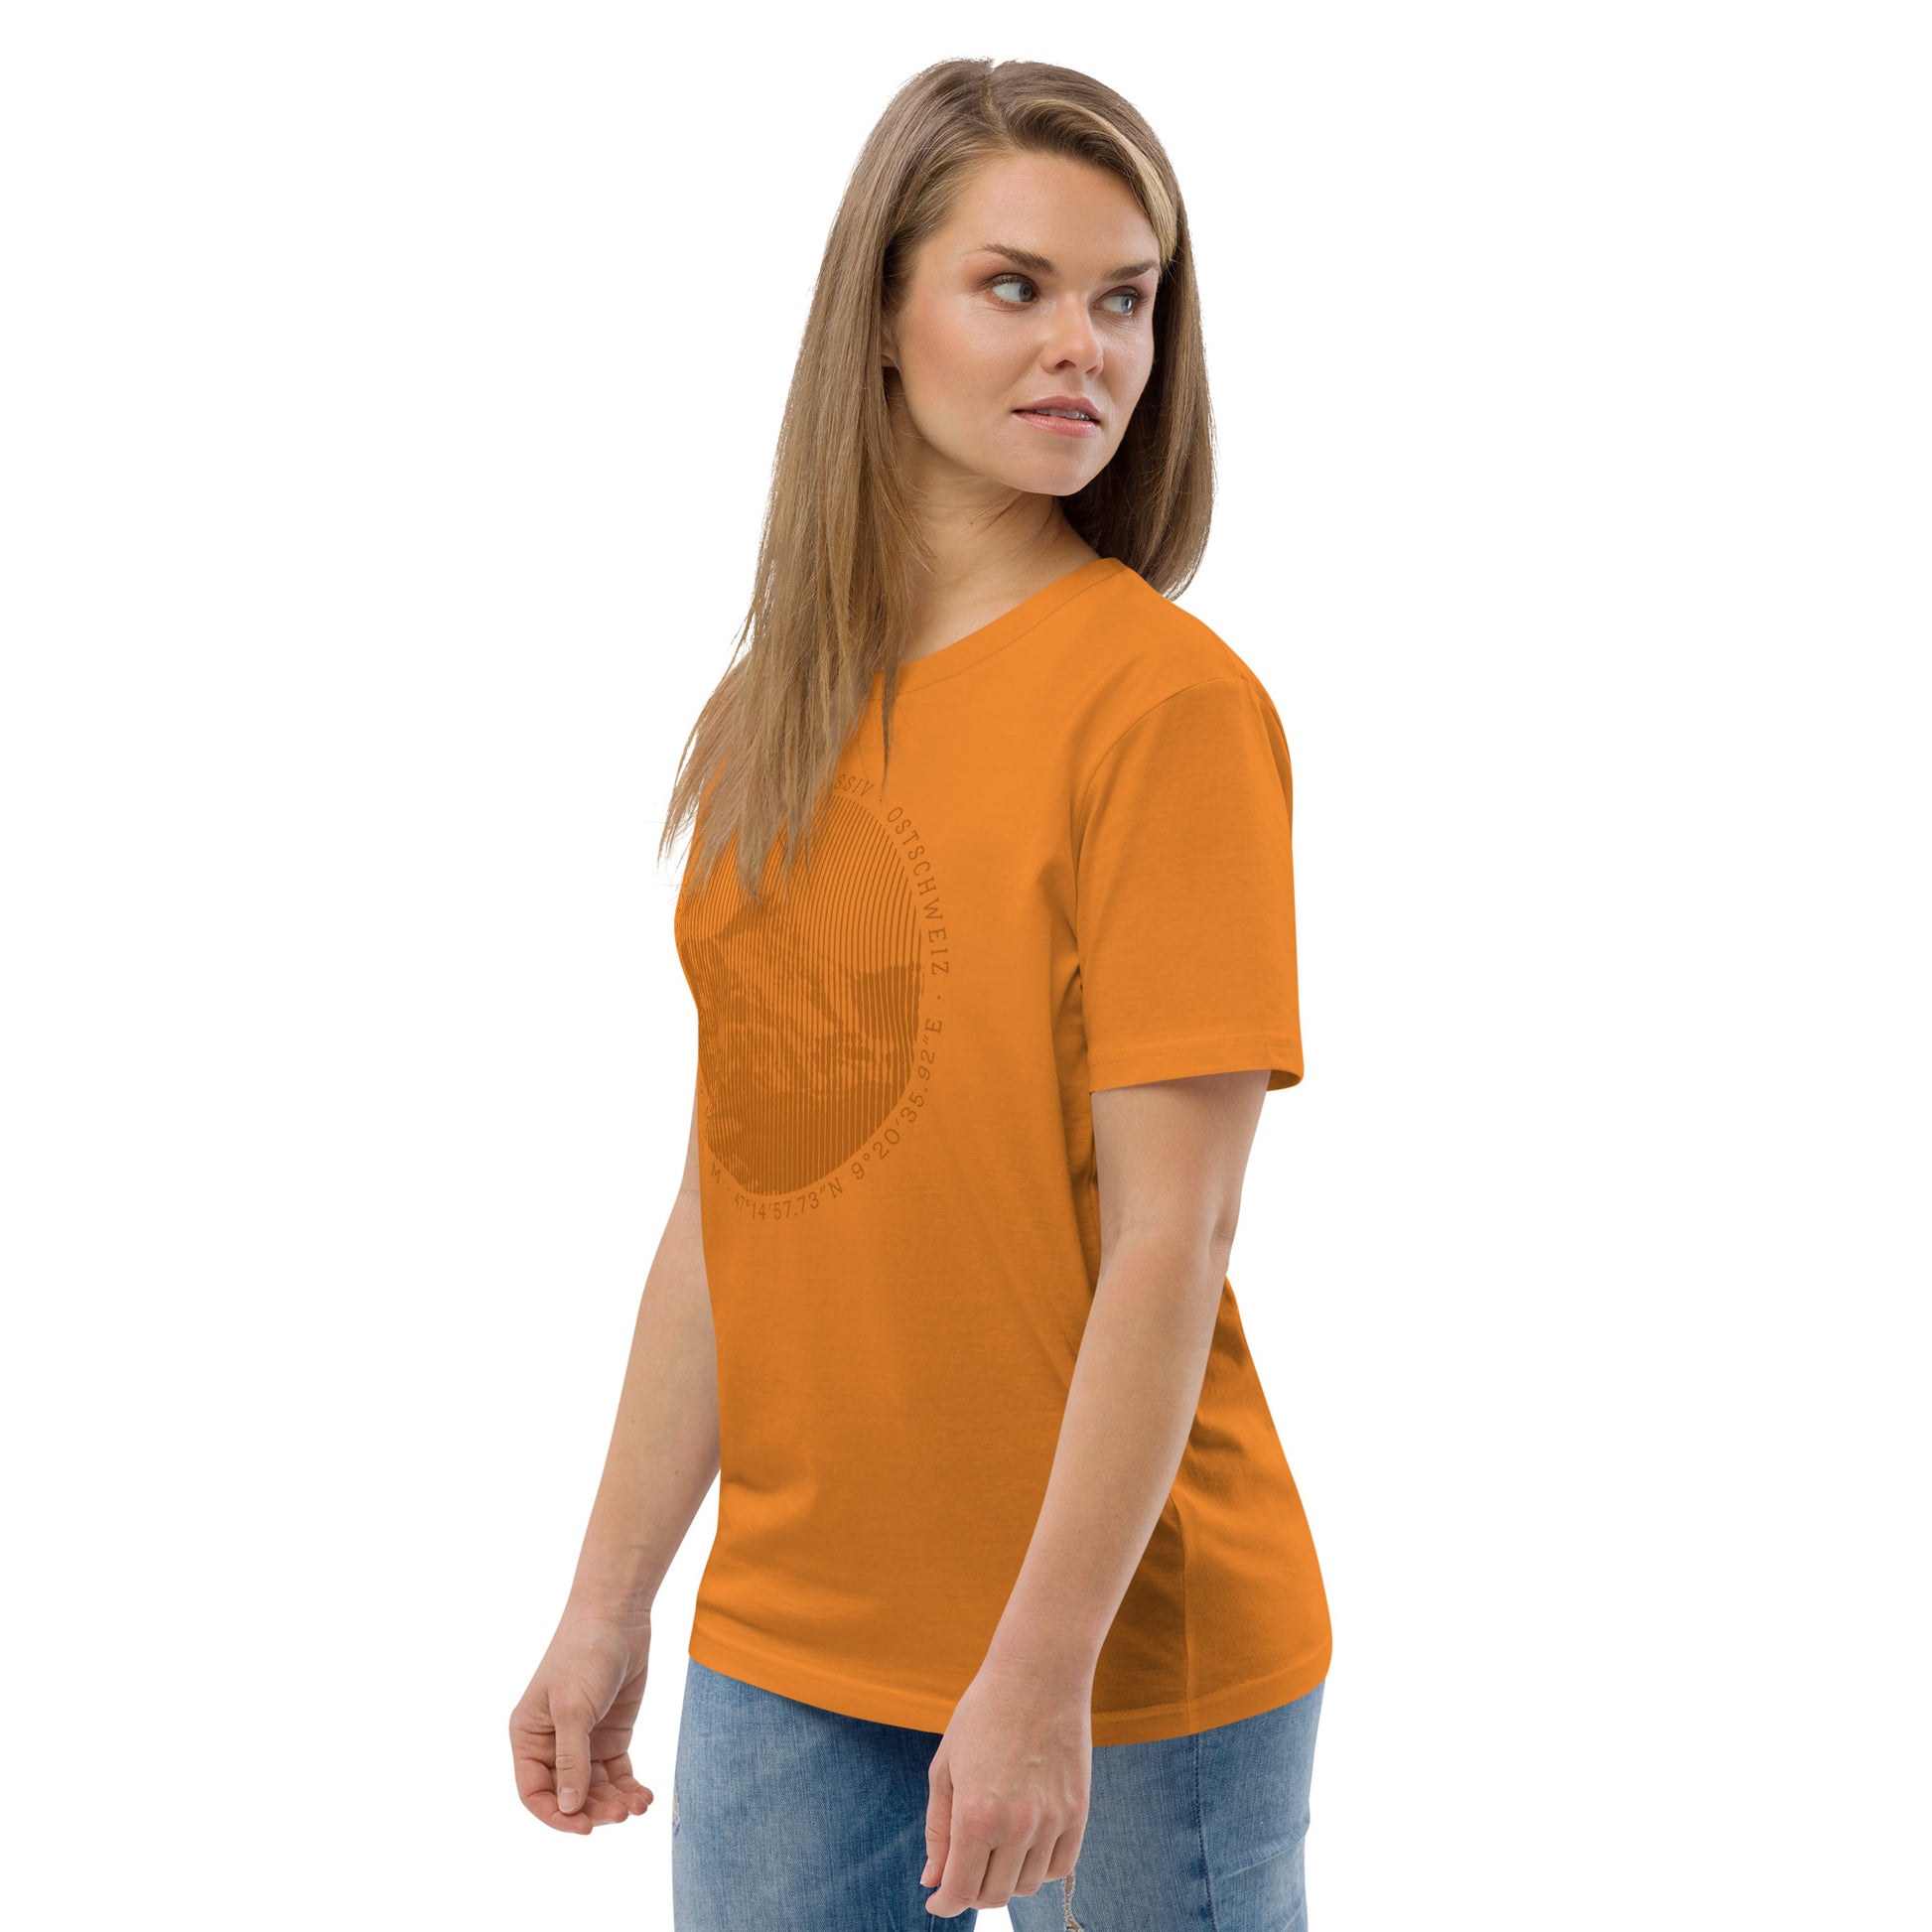 Diese Bergfreundin trägt ein oranges Damen T-Shirt von Vallada aus ökologischer Baumwolle mit einem Aufdruck des Säntis-Gipfels. Damit drückt sie ihre Liebe zu den Alpen und dem Alpstein-Gebirge im Besonderen aus.